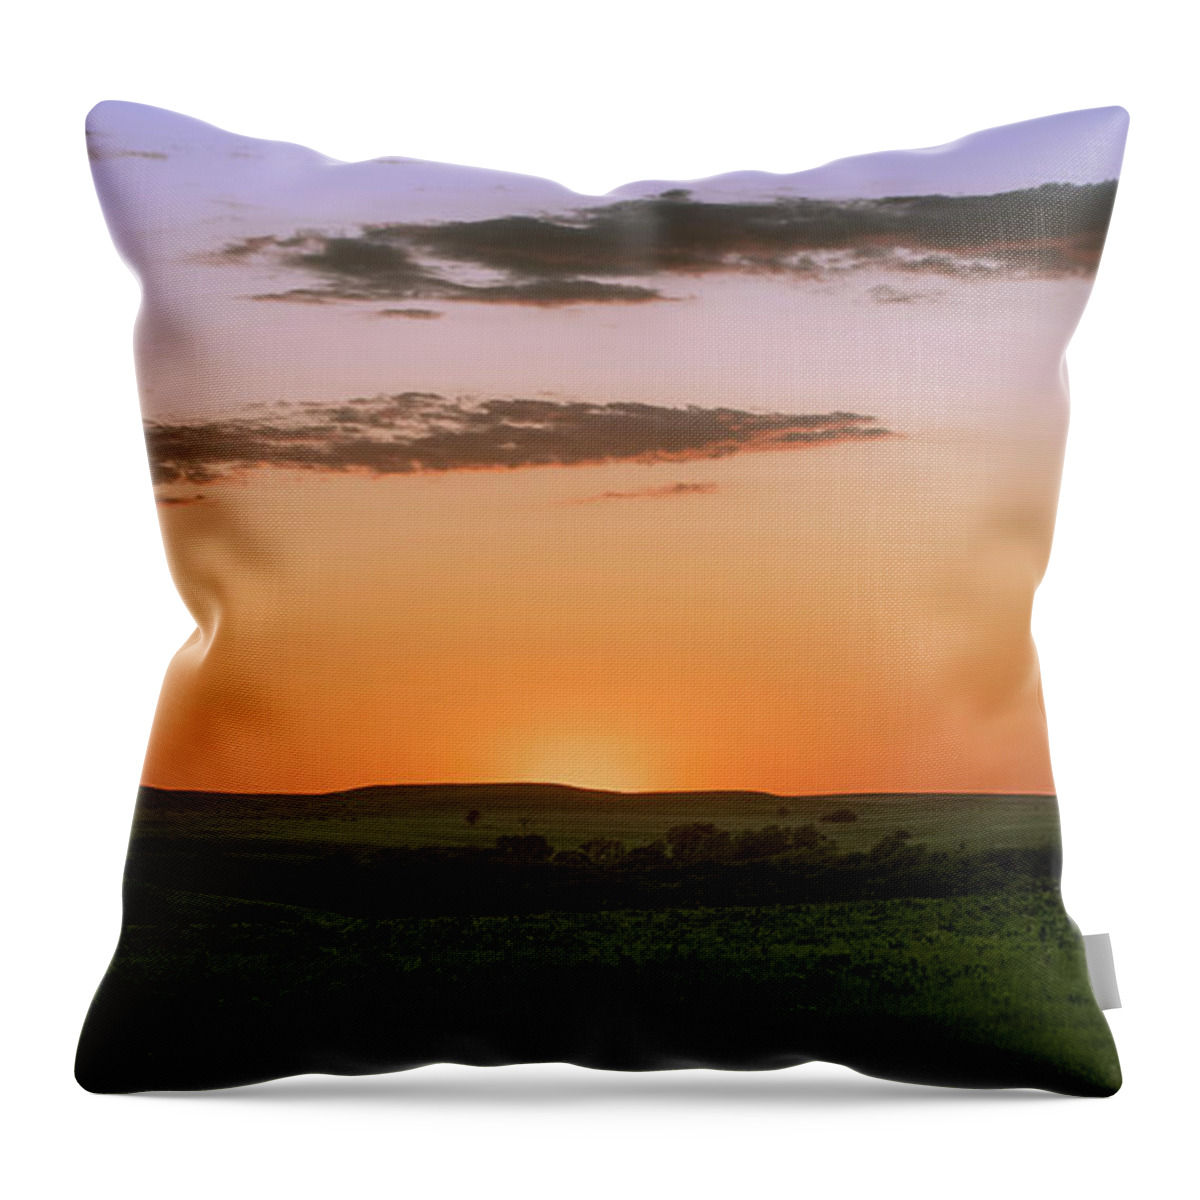 Kansas Throw Pillow featuring the photograph Flint Hills Sunset by David Drew